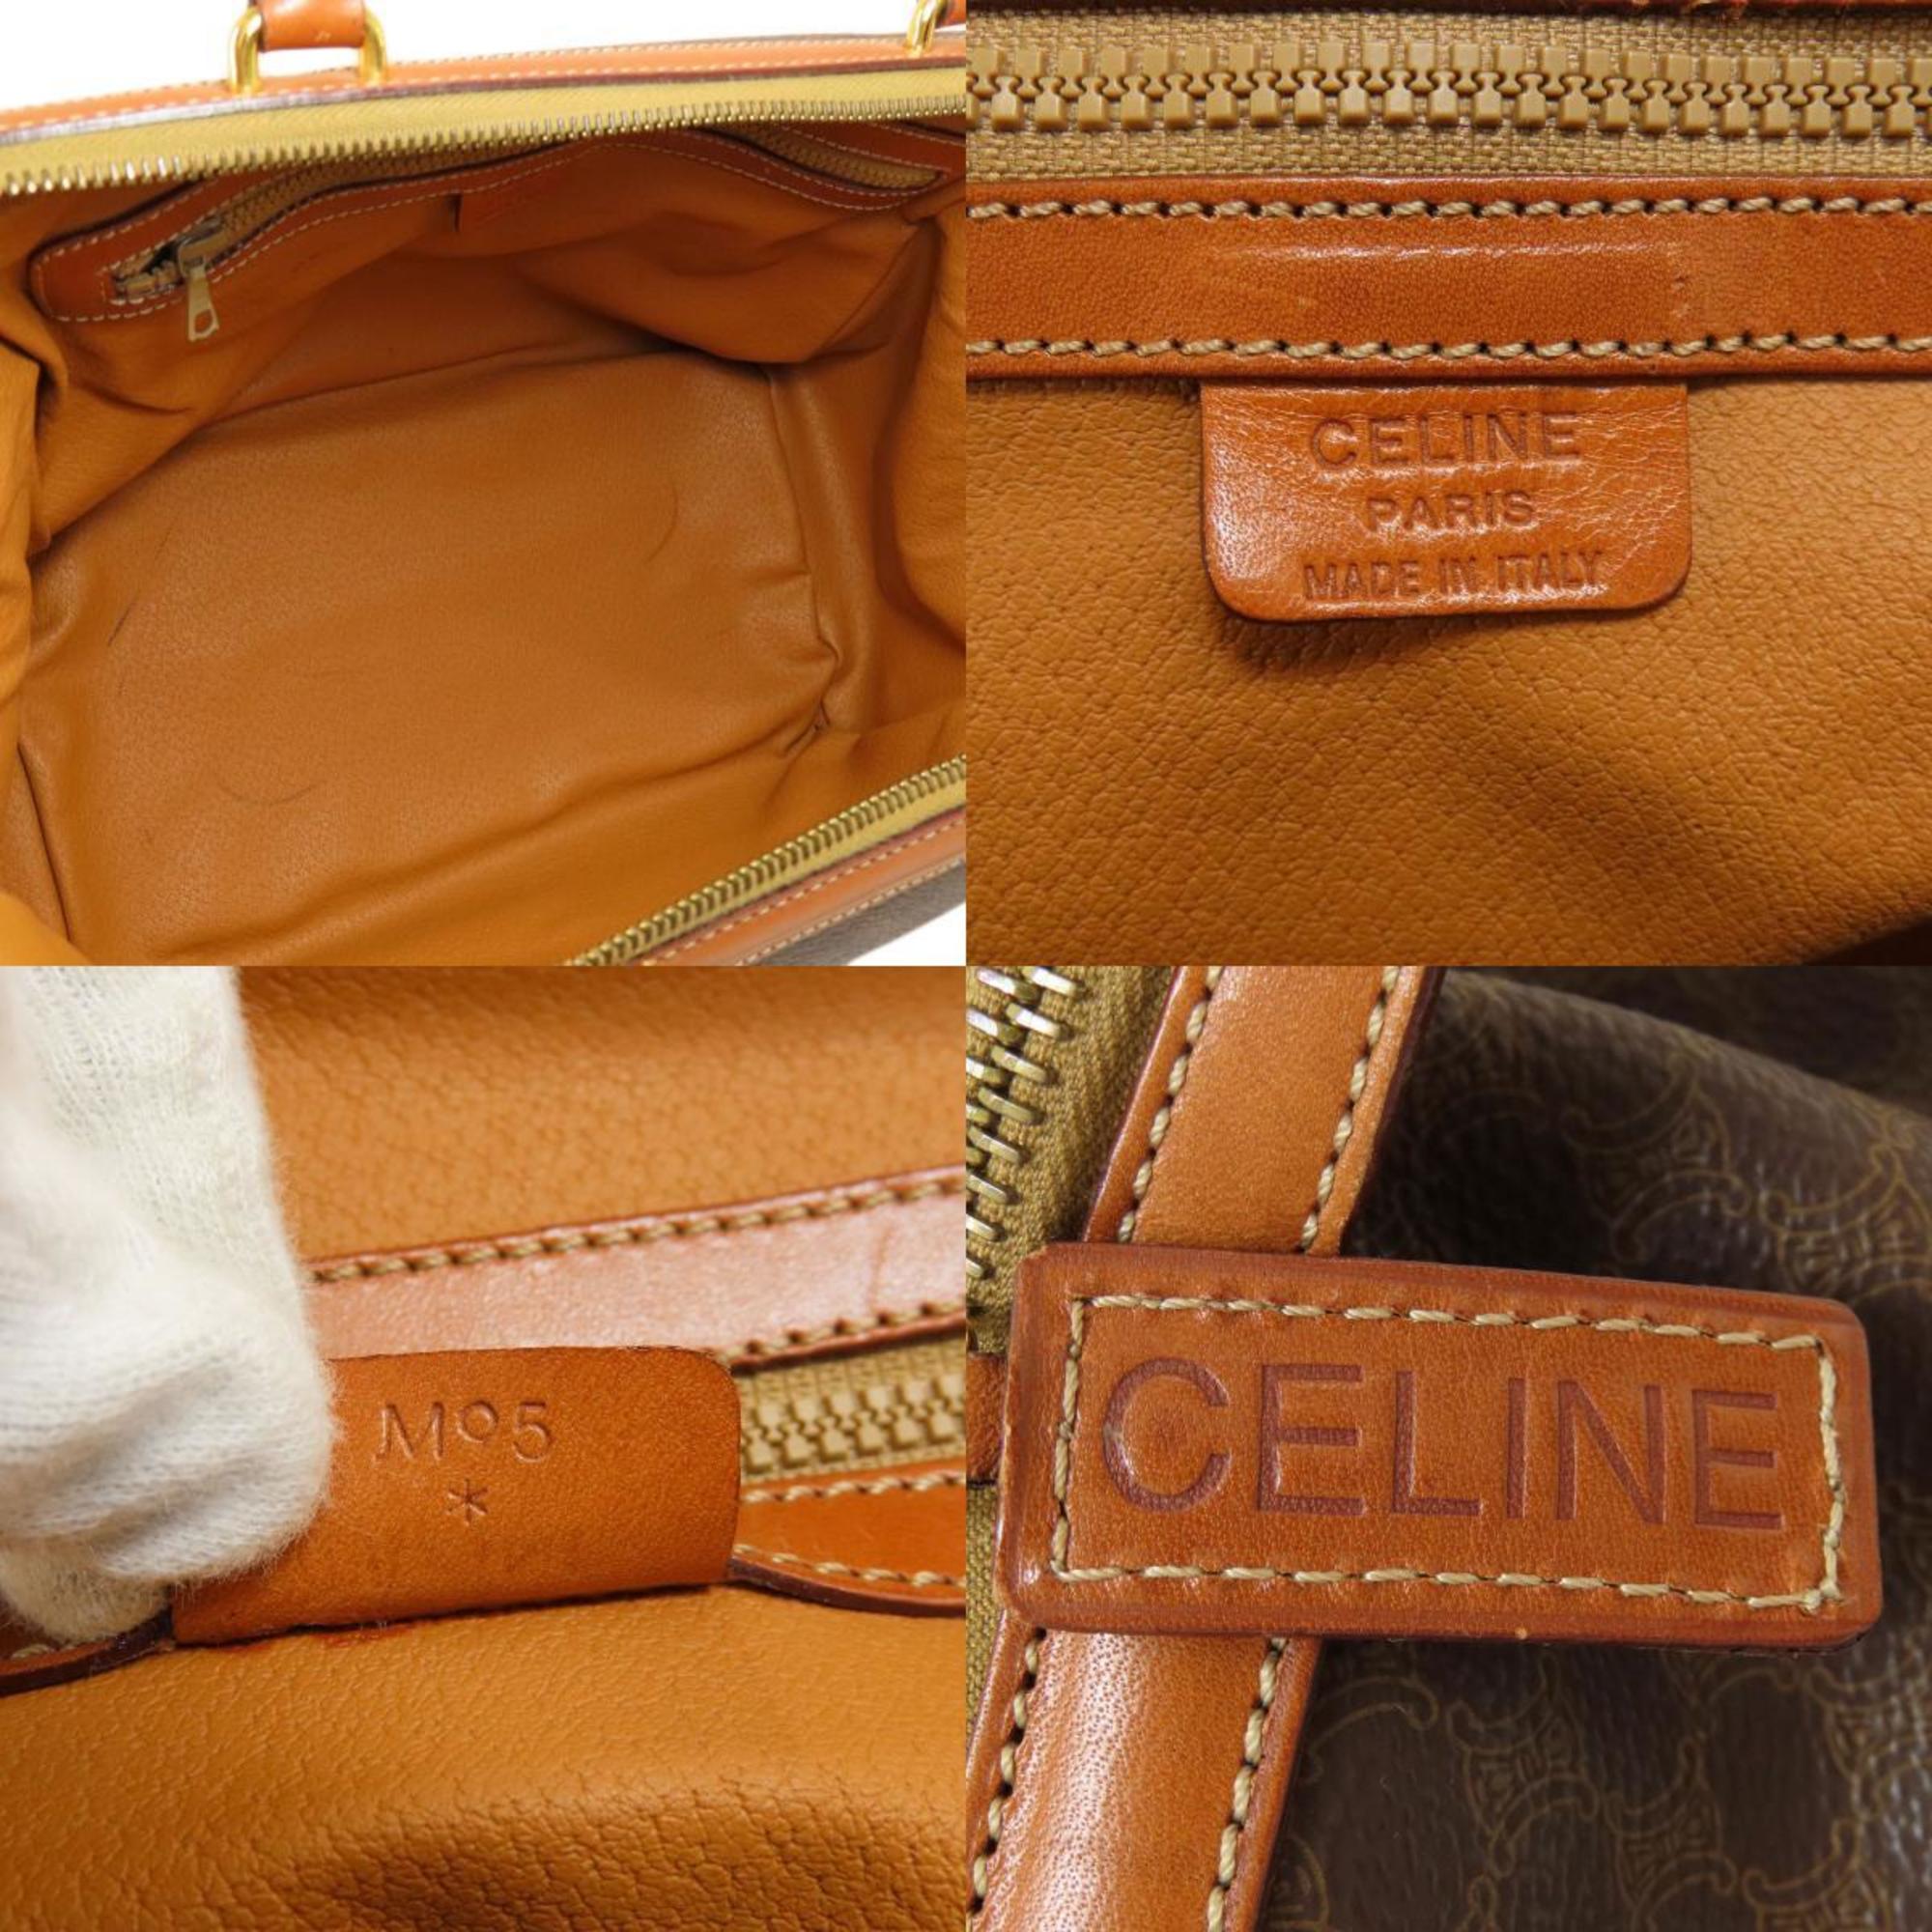 Celine Macadam handbag leather ladies